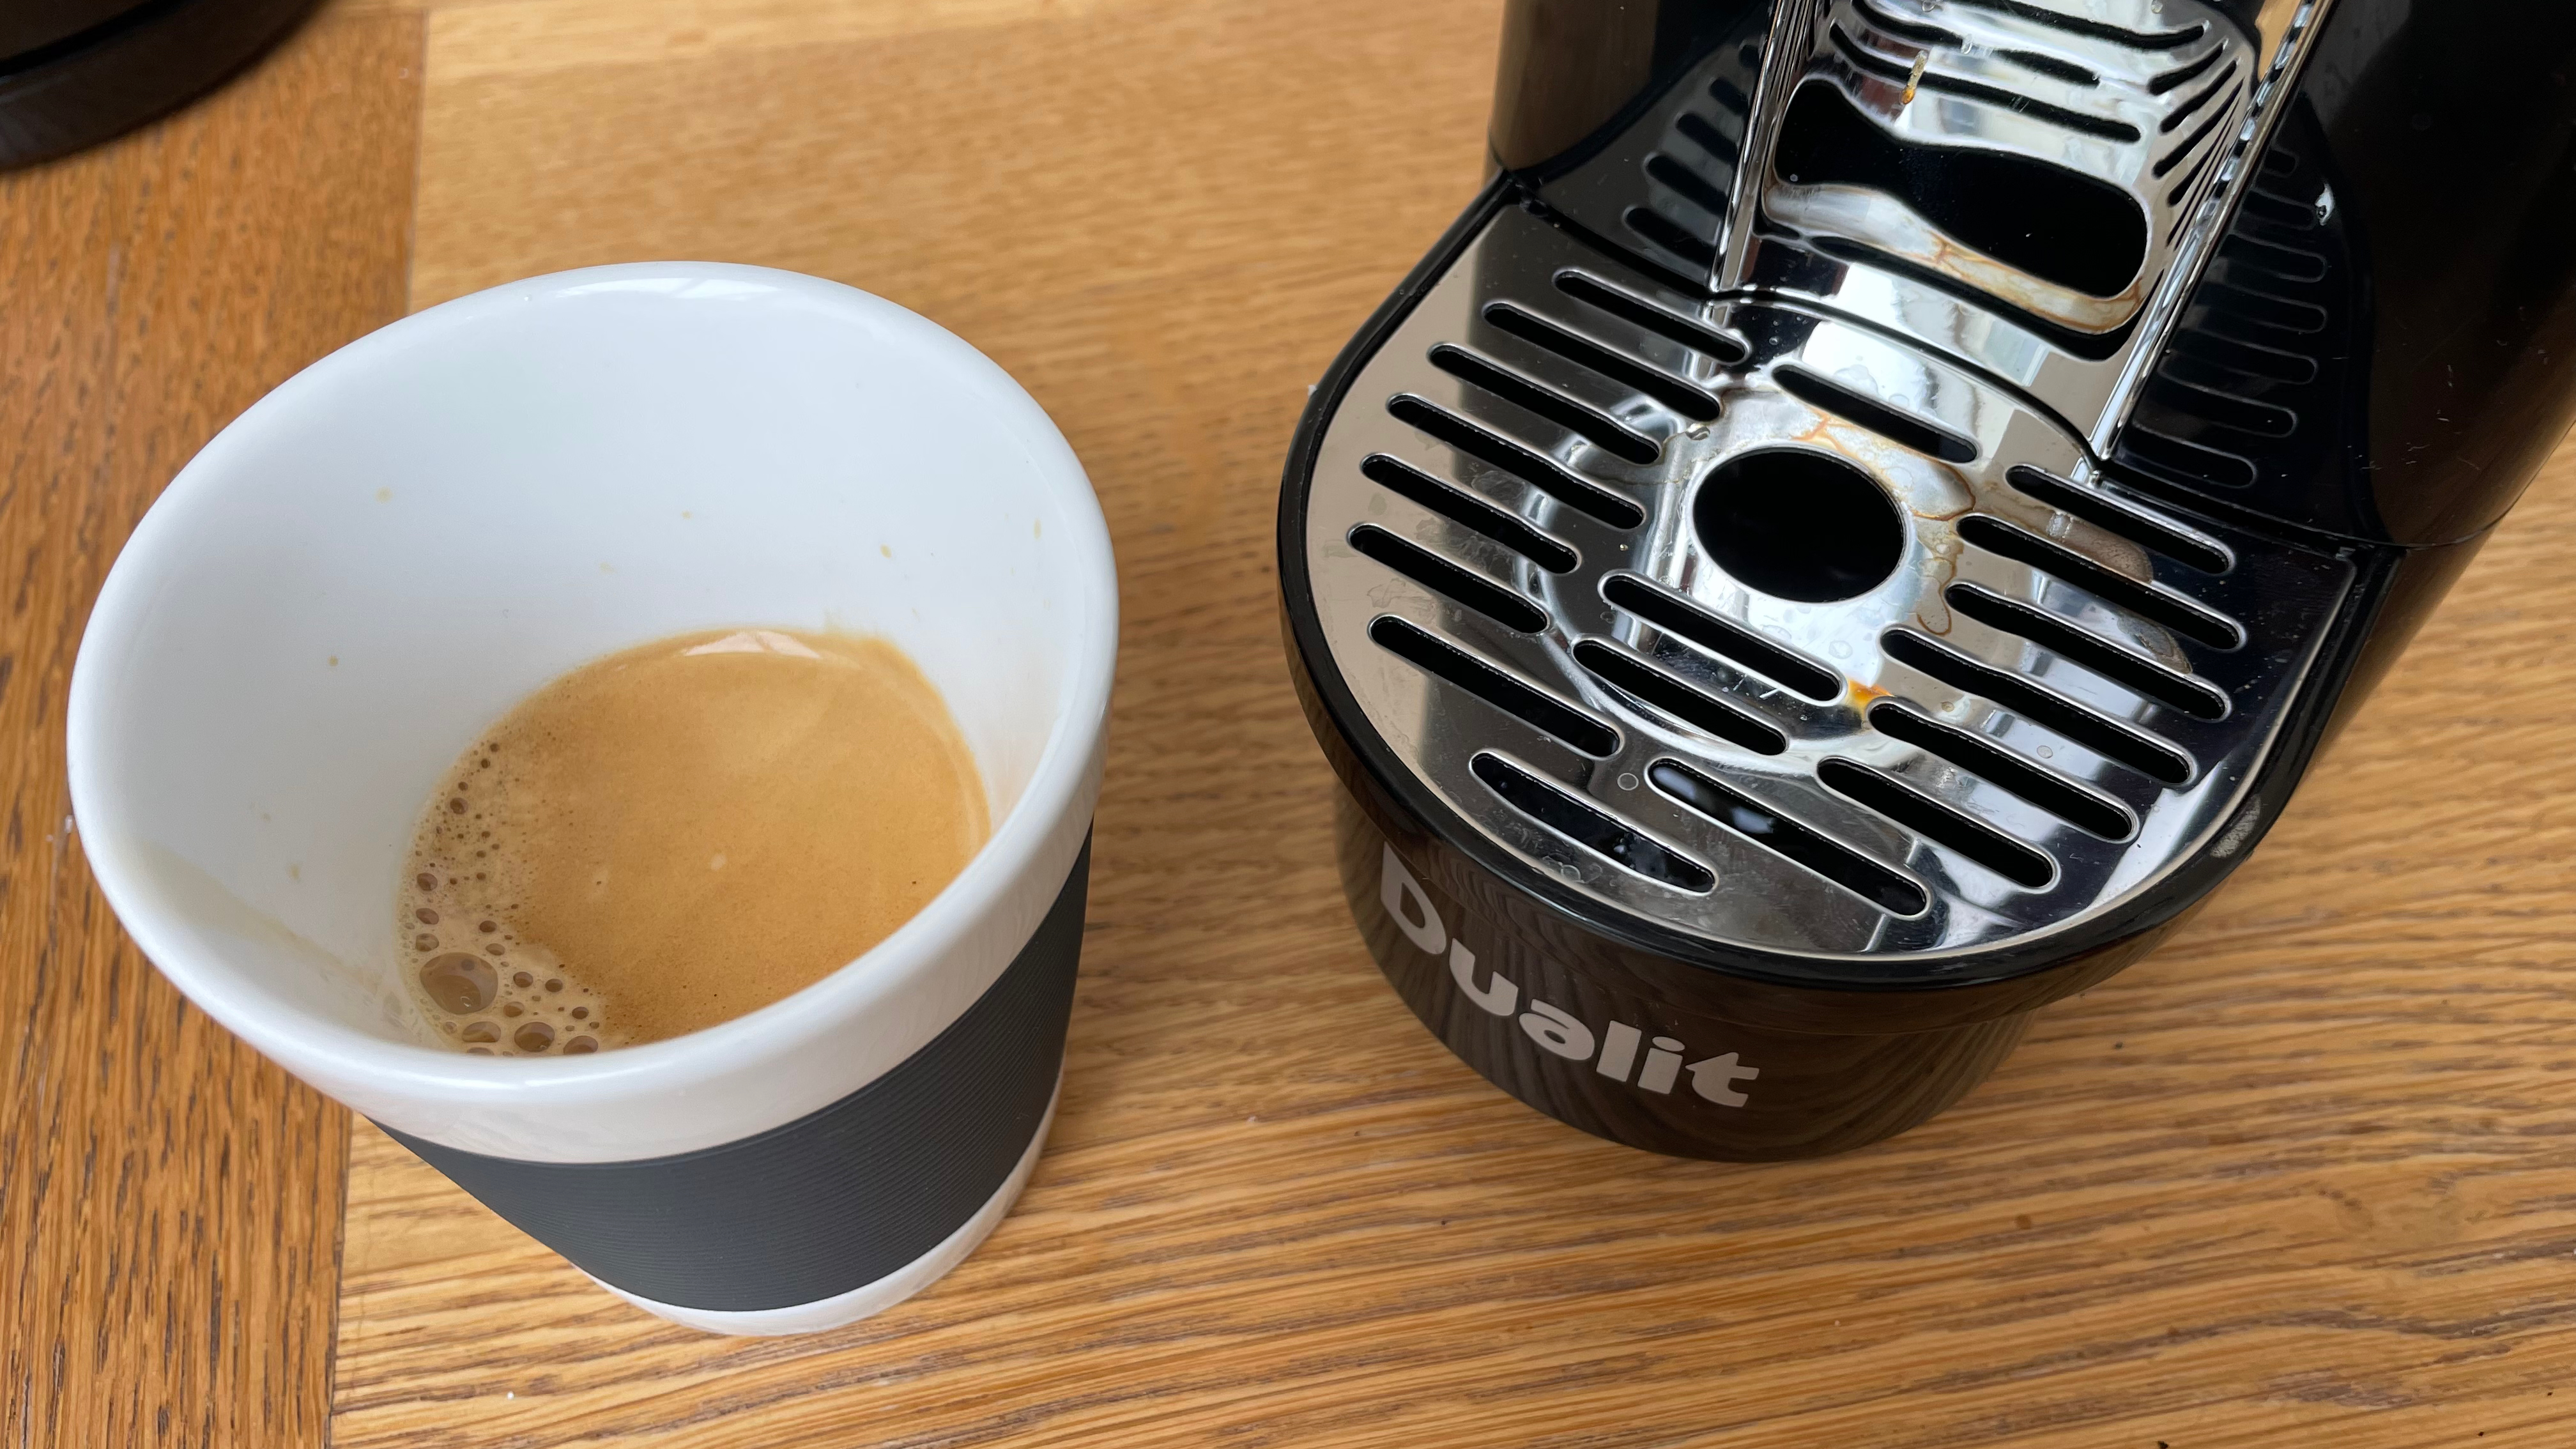 Imagem da máquina de café Dualit depois de fazer café expresso